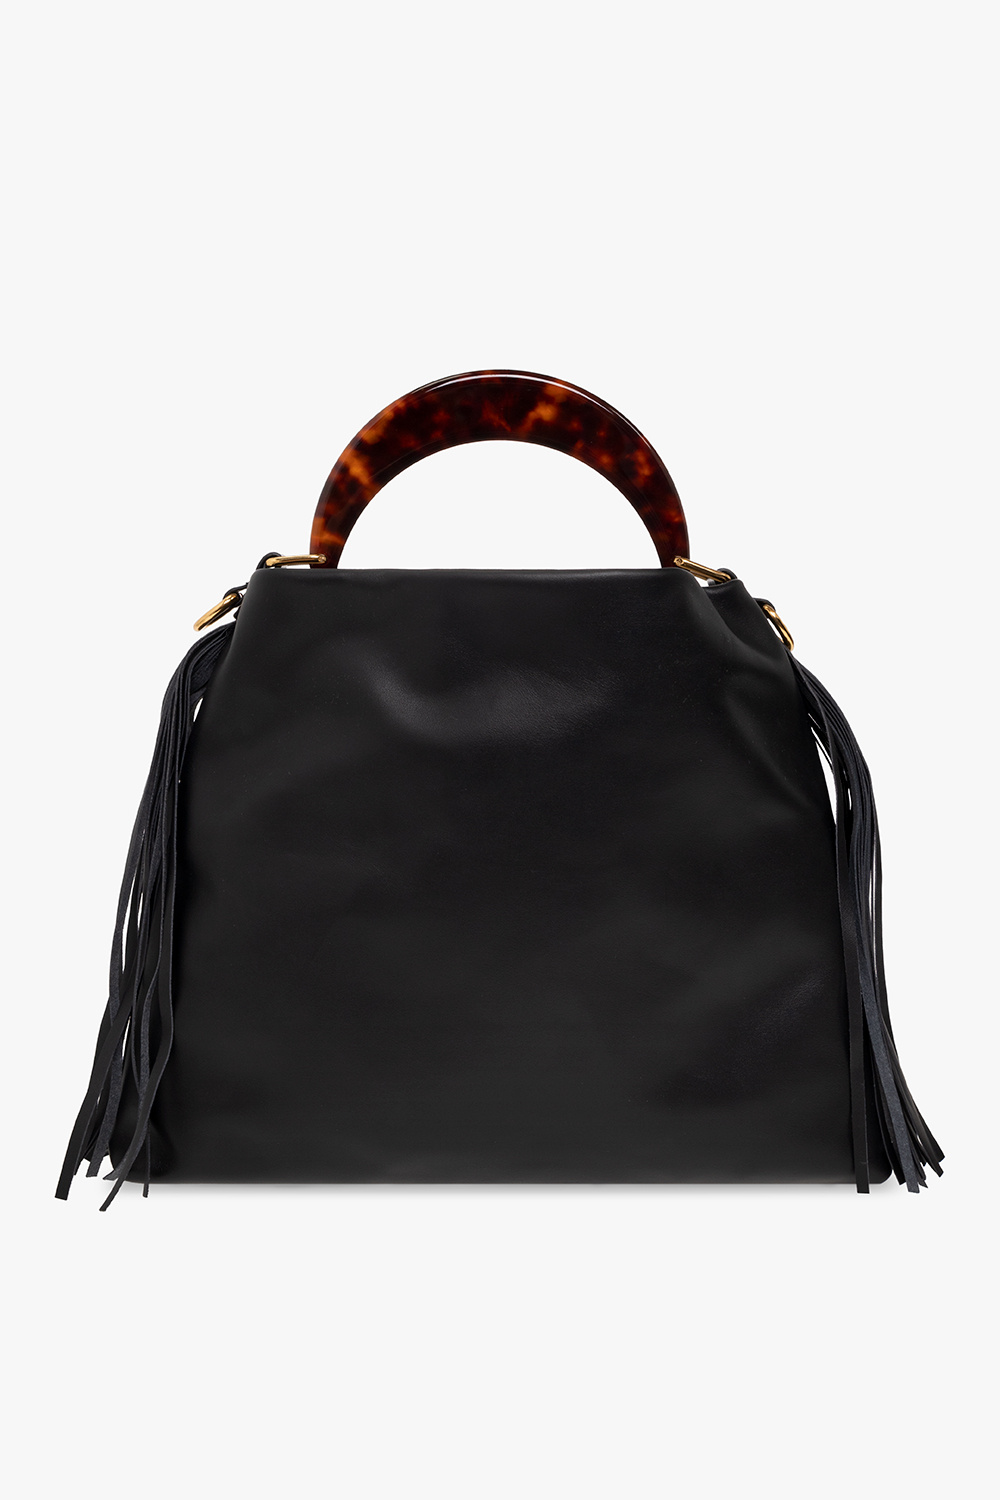 marni tribeca ‘Venice Small’ shoulder bag